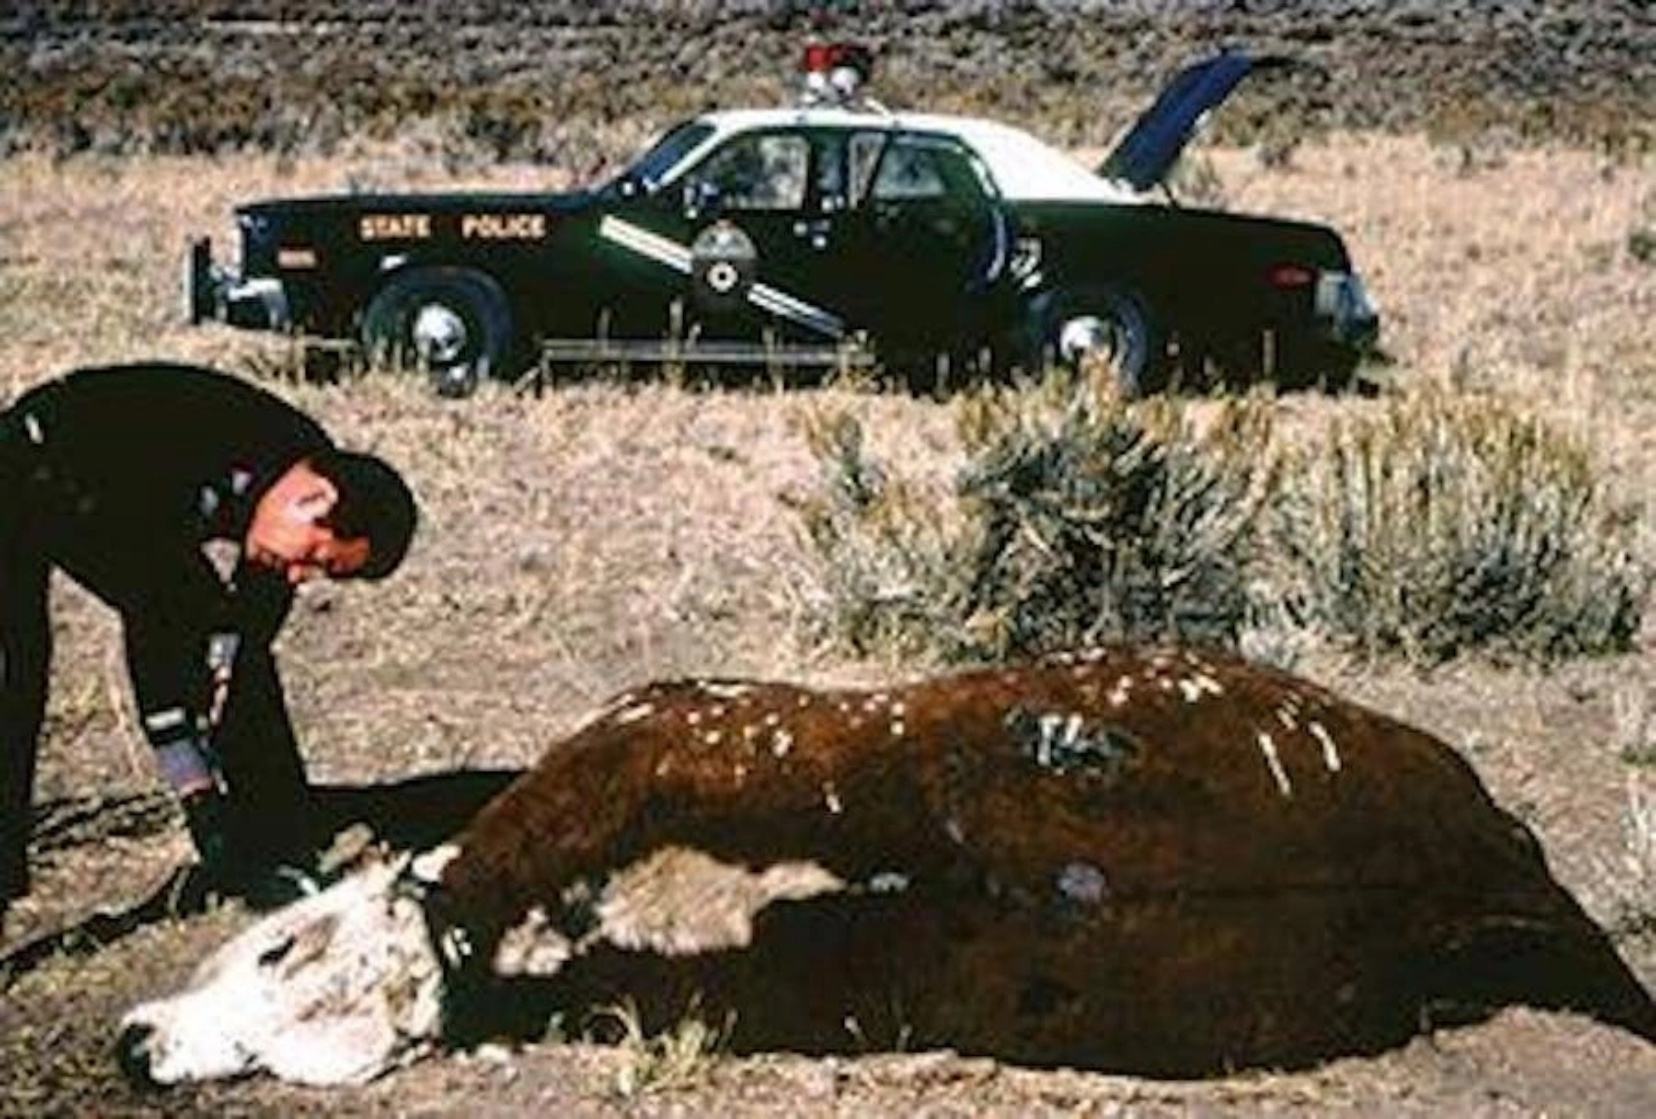 Gabe Valdez, bivši policajac države New Mexico, tvrdio je da je pronašao osakaćenu kravu s čudnim stvorenjem unutra